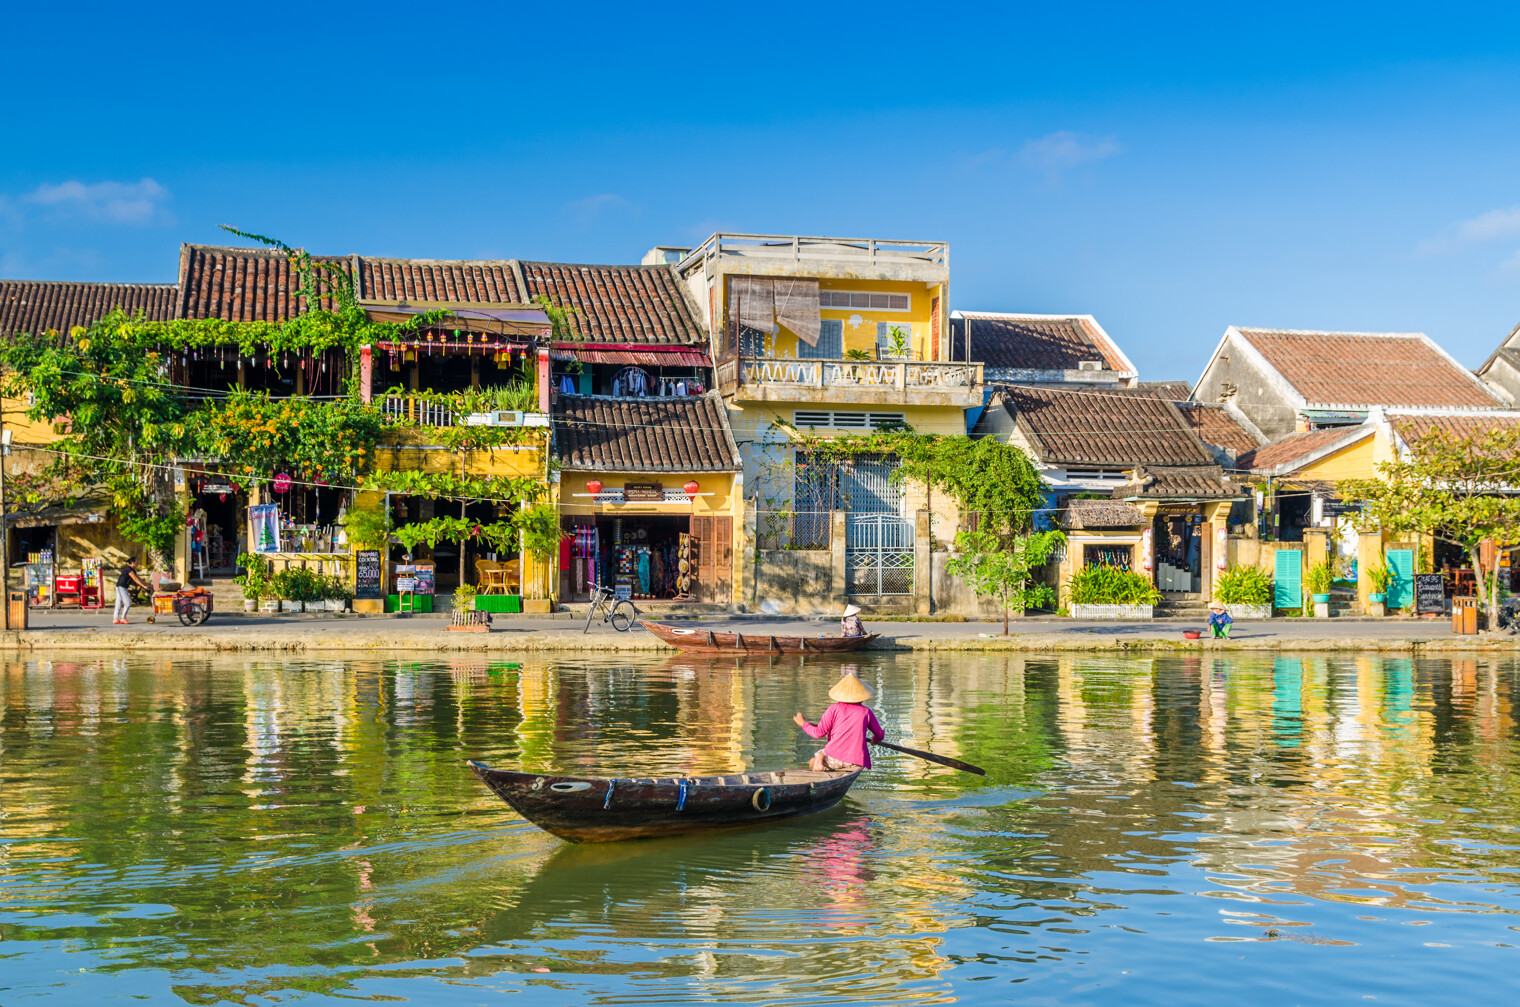 Vue sur le village de Hoi An au Vietnam depuis l'eau